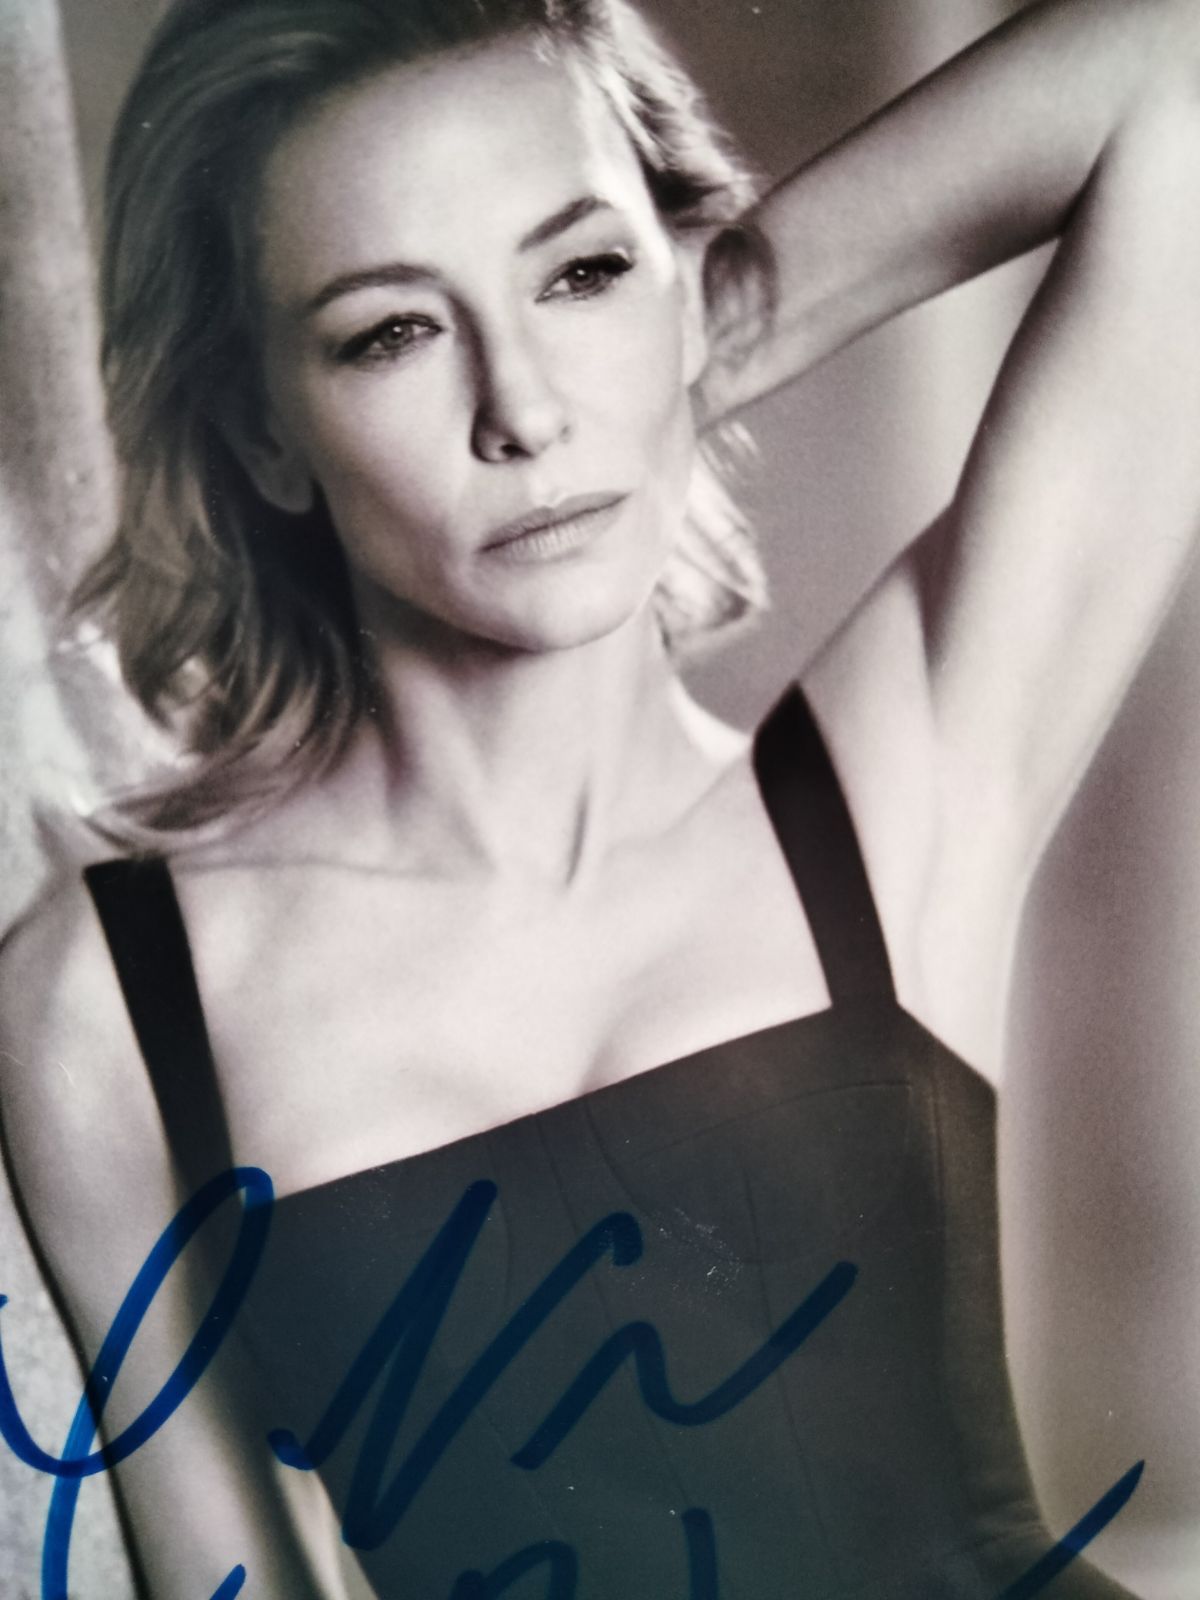 ケイト・ブランシェット直筆サイン入り2Lサイズ写真…Cate Blanchett